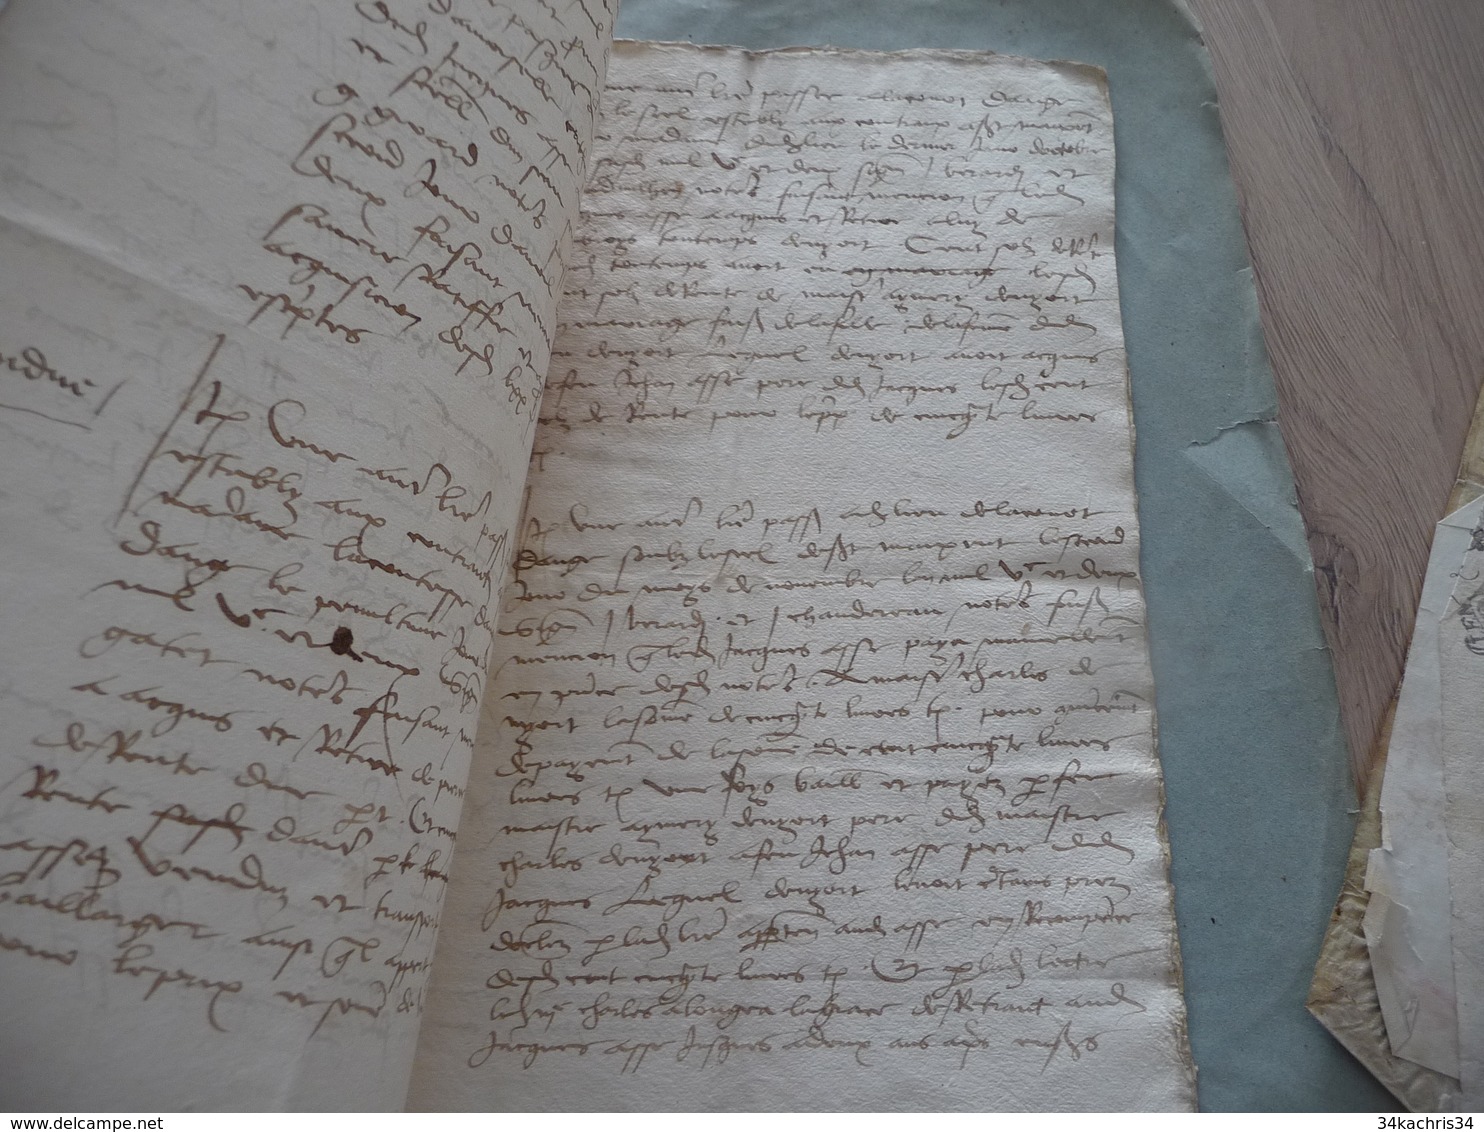 Archive Assé de L'Ausmosne 4 pièces manuscrites à étudier mouillures en l'état